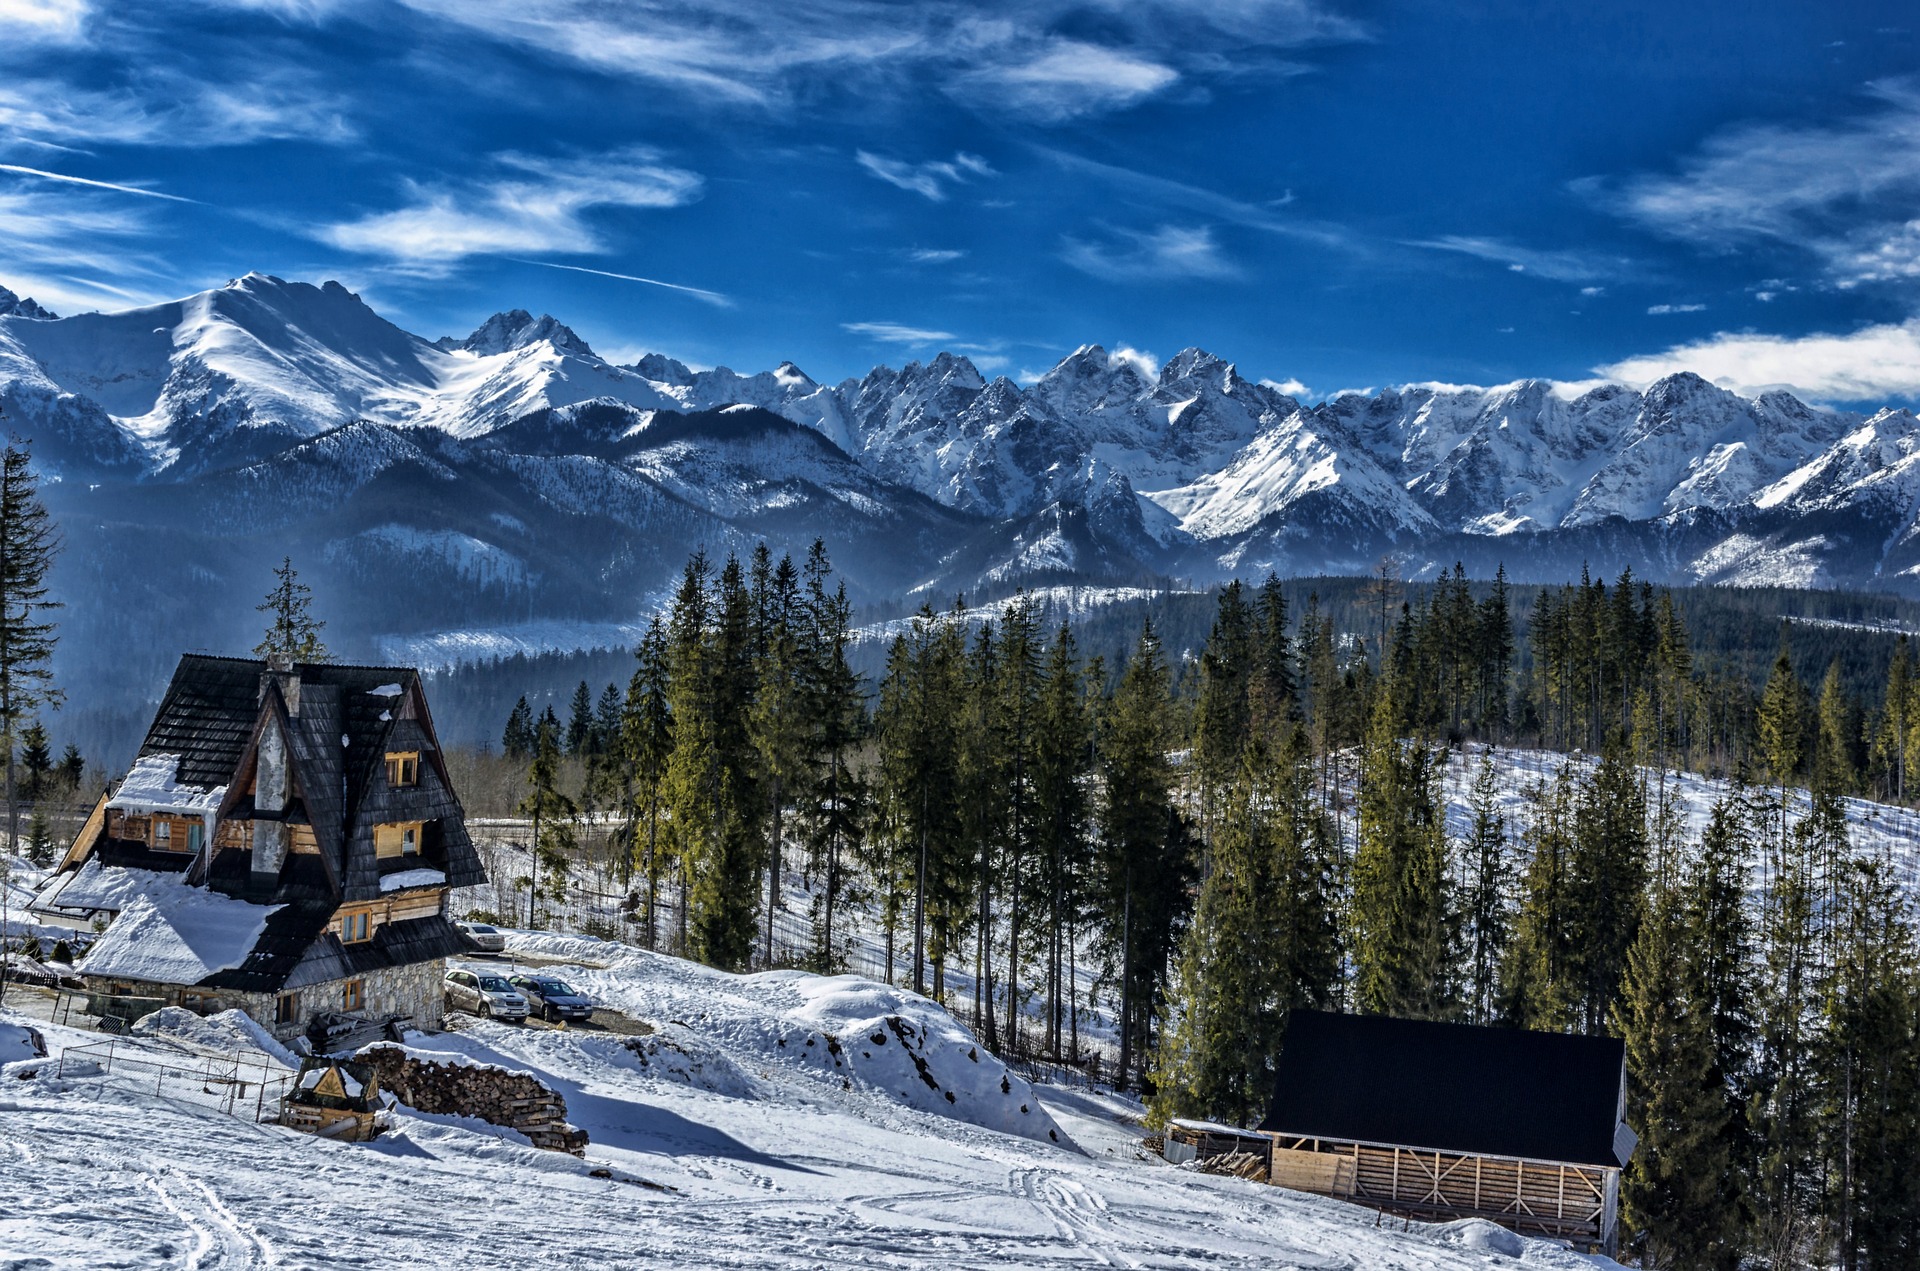 Zimowy wypoczynek pod Tatrami a bukowanie noclegów – kiedy to zrobić?